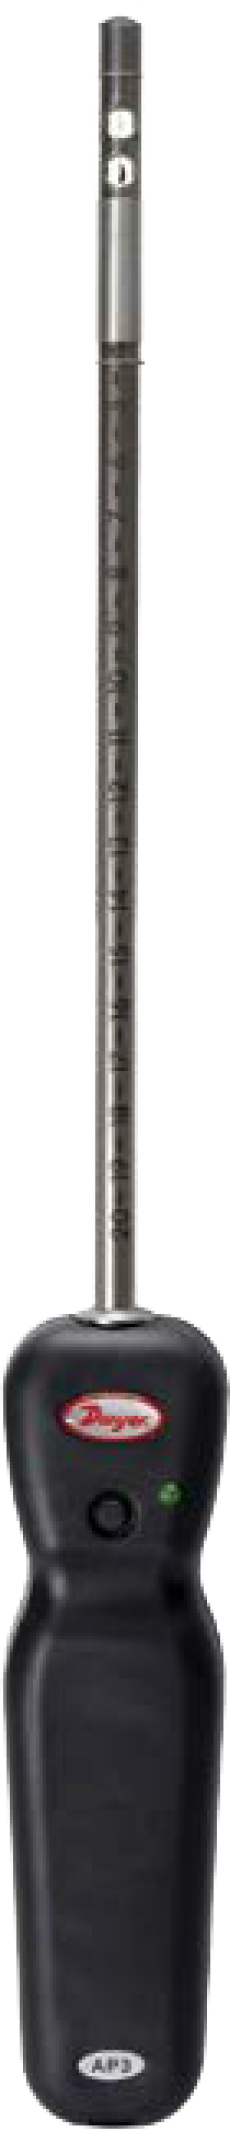 Беспроводной термо-анемометр DWYER AP3